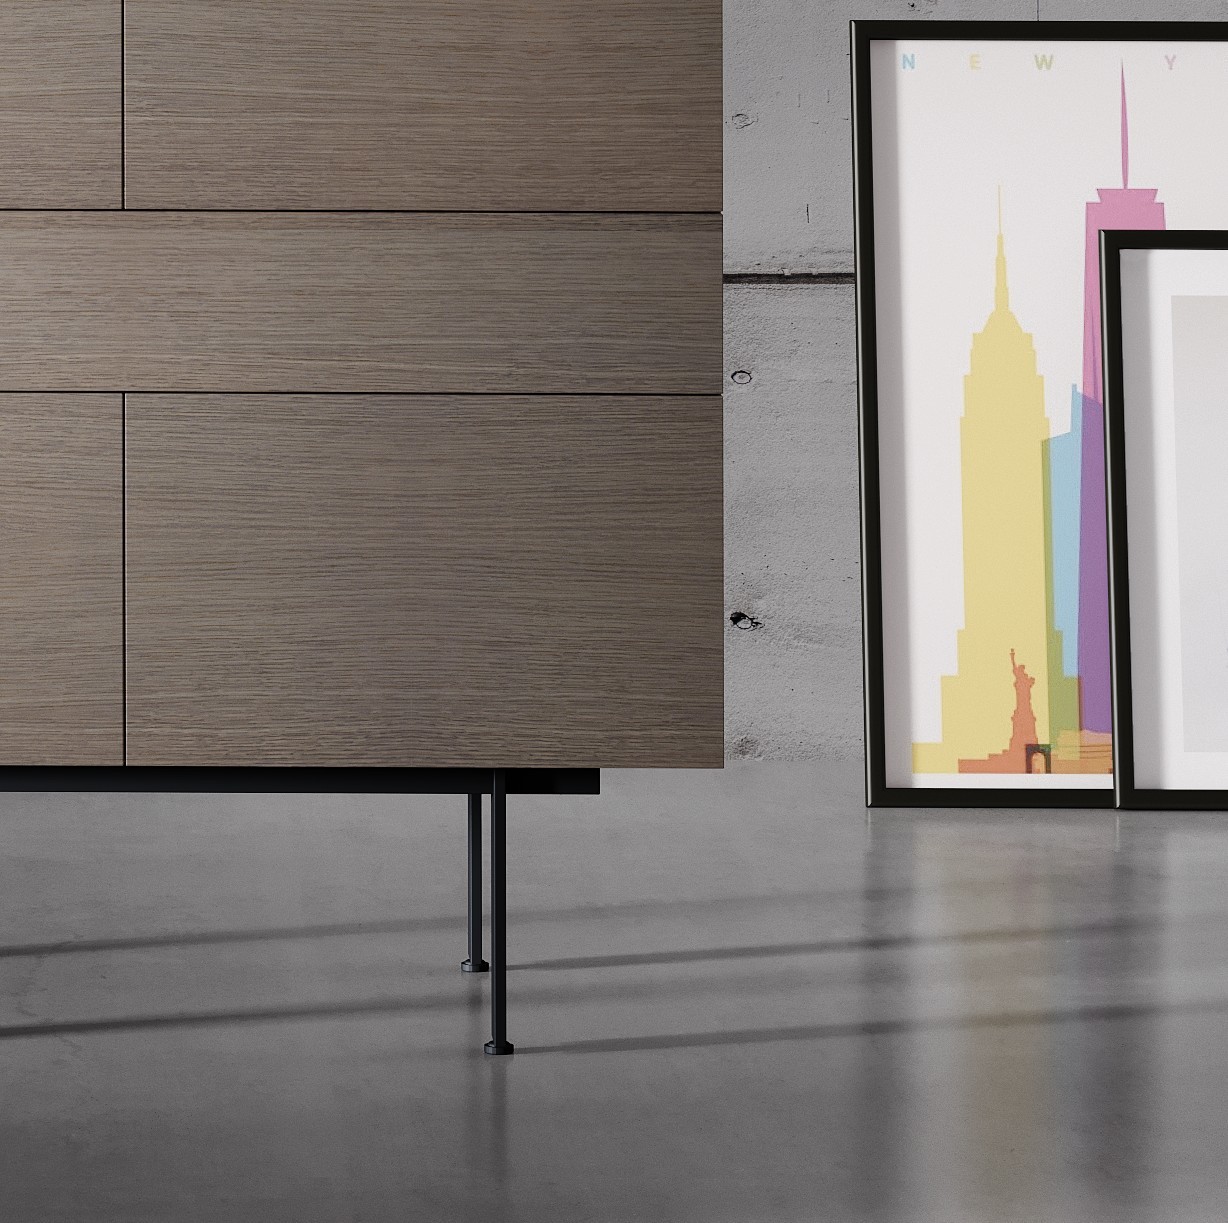 Aproveite a versatilidade e elegância do móvel bar Tray em seu lar. O design moderno deste móvel torna-o uma ótima adição para qualquer sala de estar.